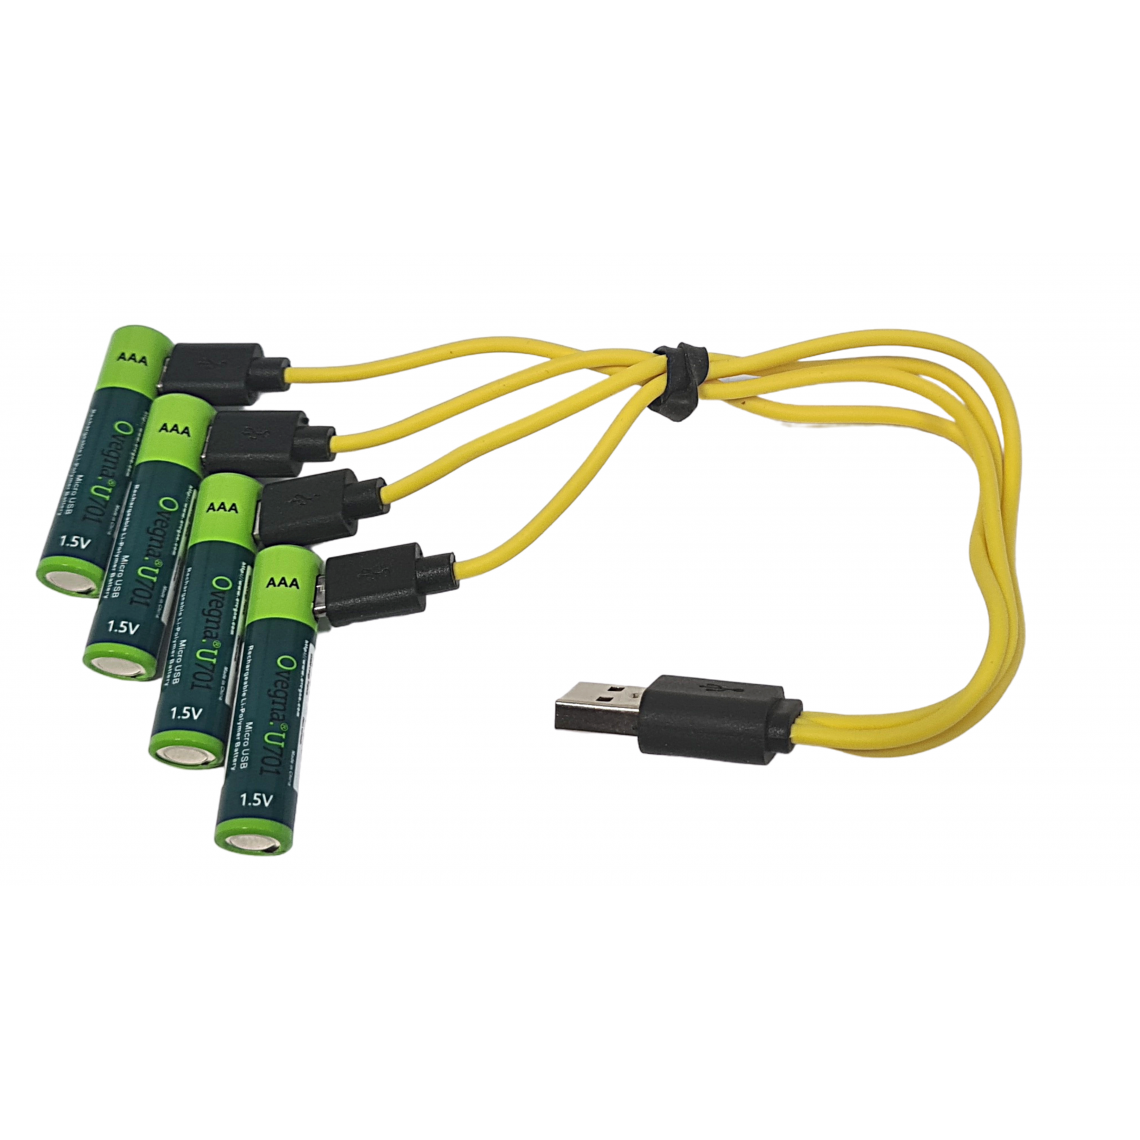 Ovegna - "Ovegna U701 : Piles AAA légères, en Lithium-ION (Non NiMH, Non alcalines), 600 mAh, Rechargeables par entrée Micro USB, (Jeu de 4)" - Piles rechargeables